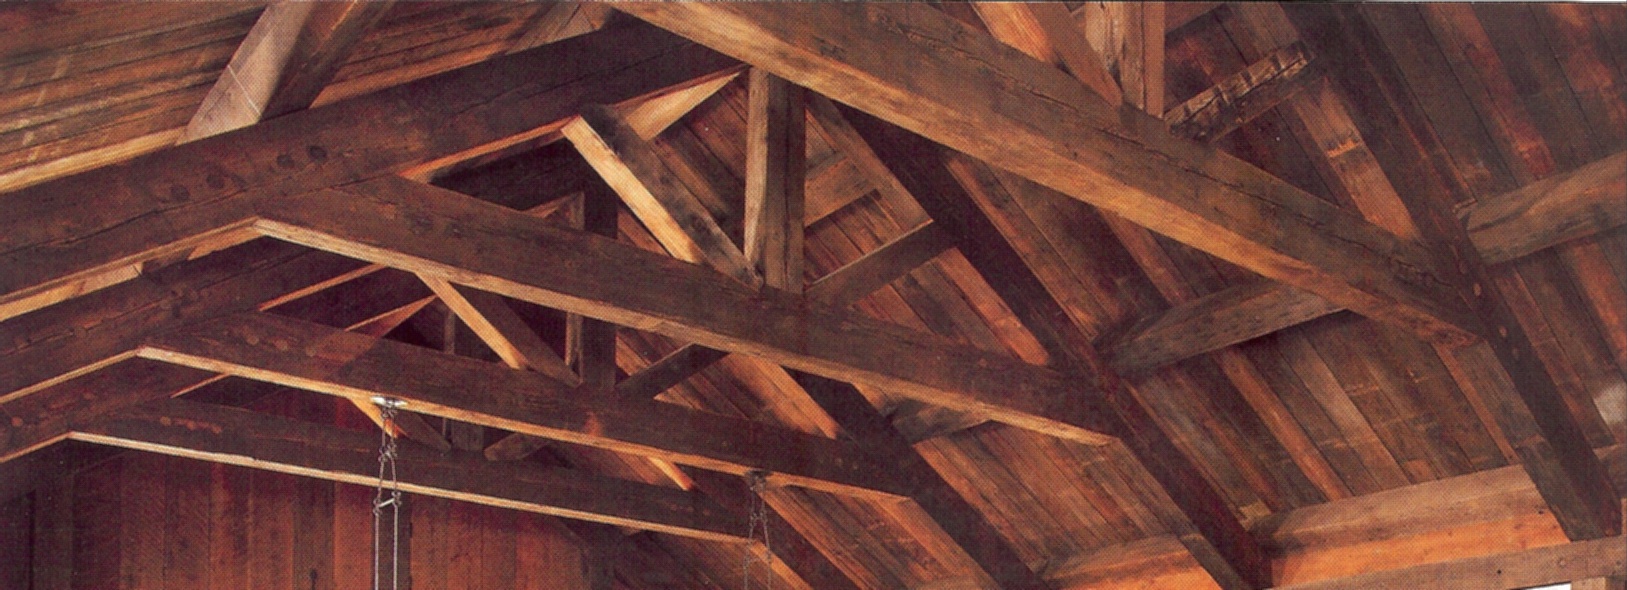 Timber beams